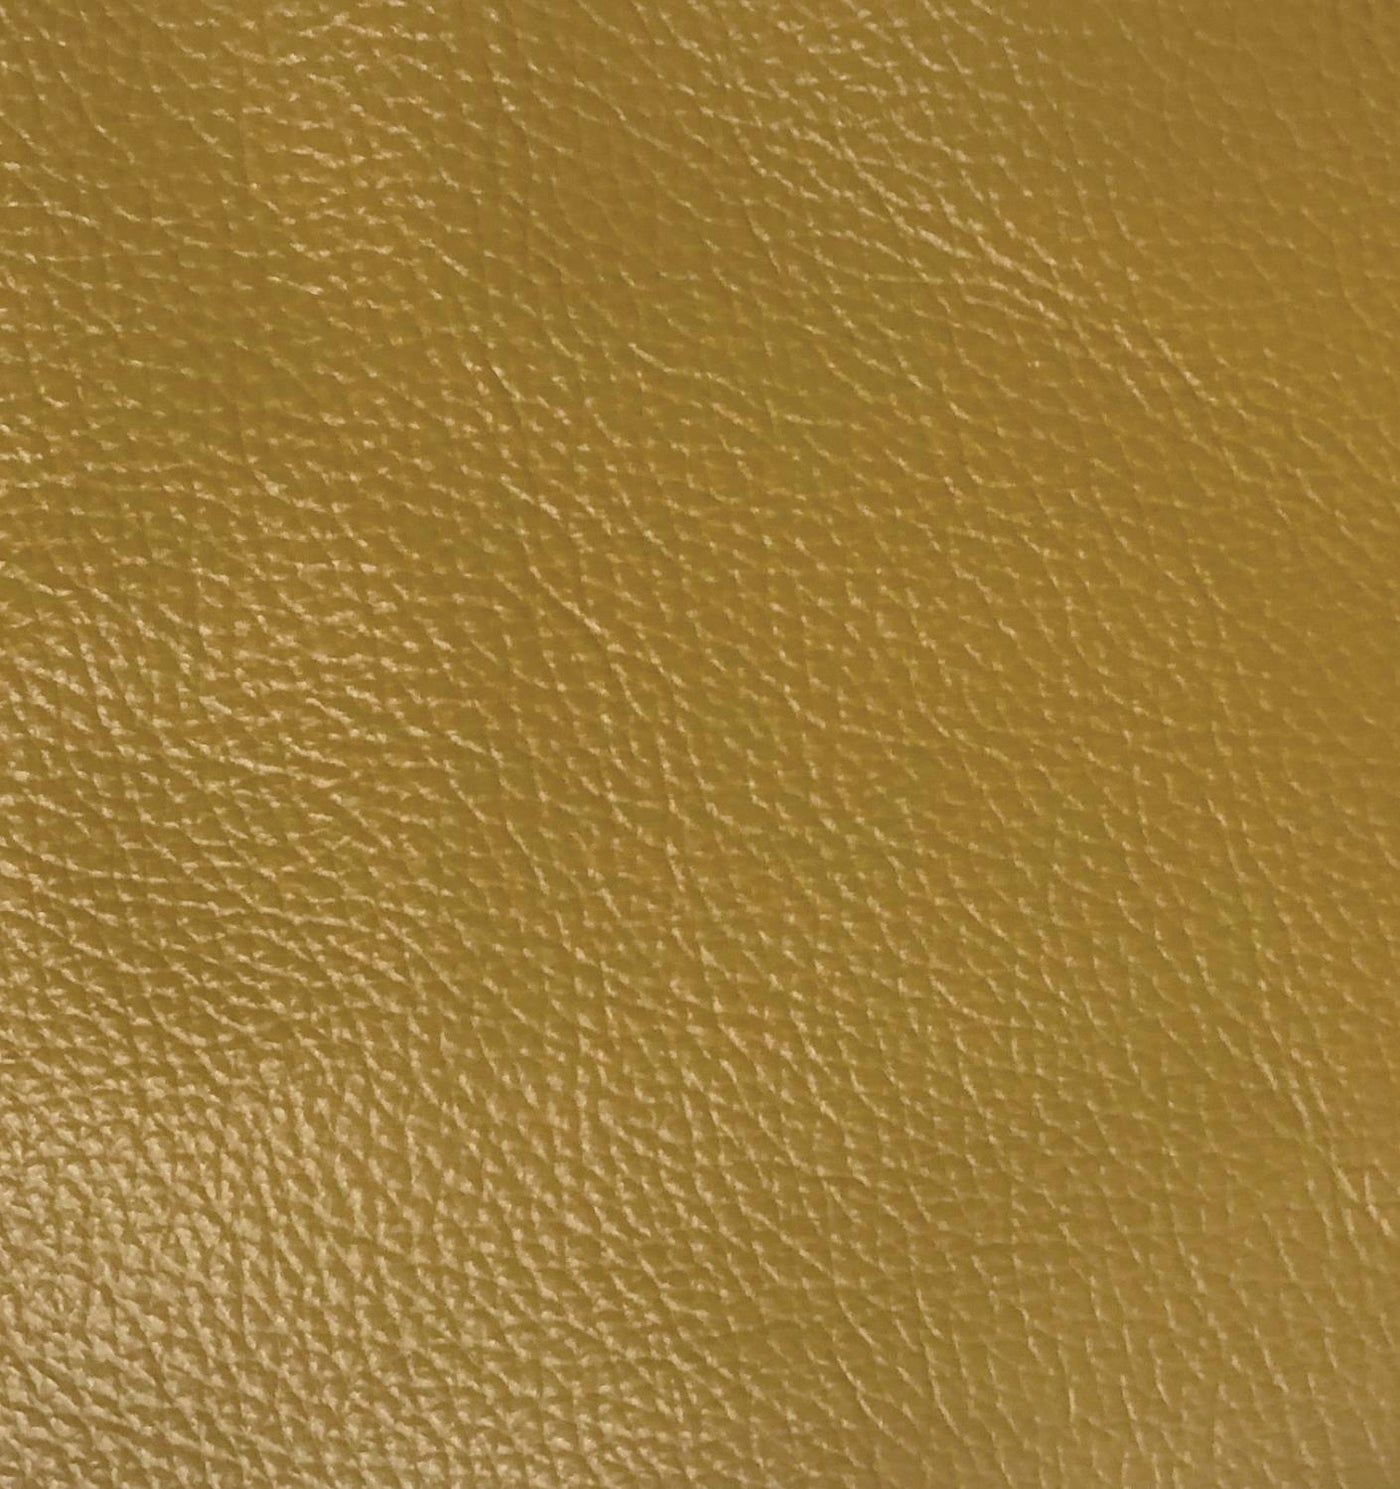 Jon Perse Leather Loveseat - Mustard